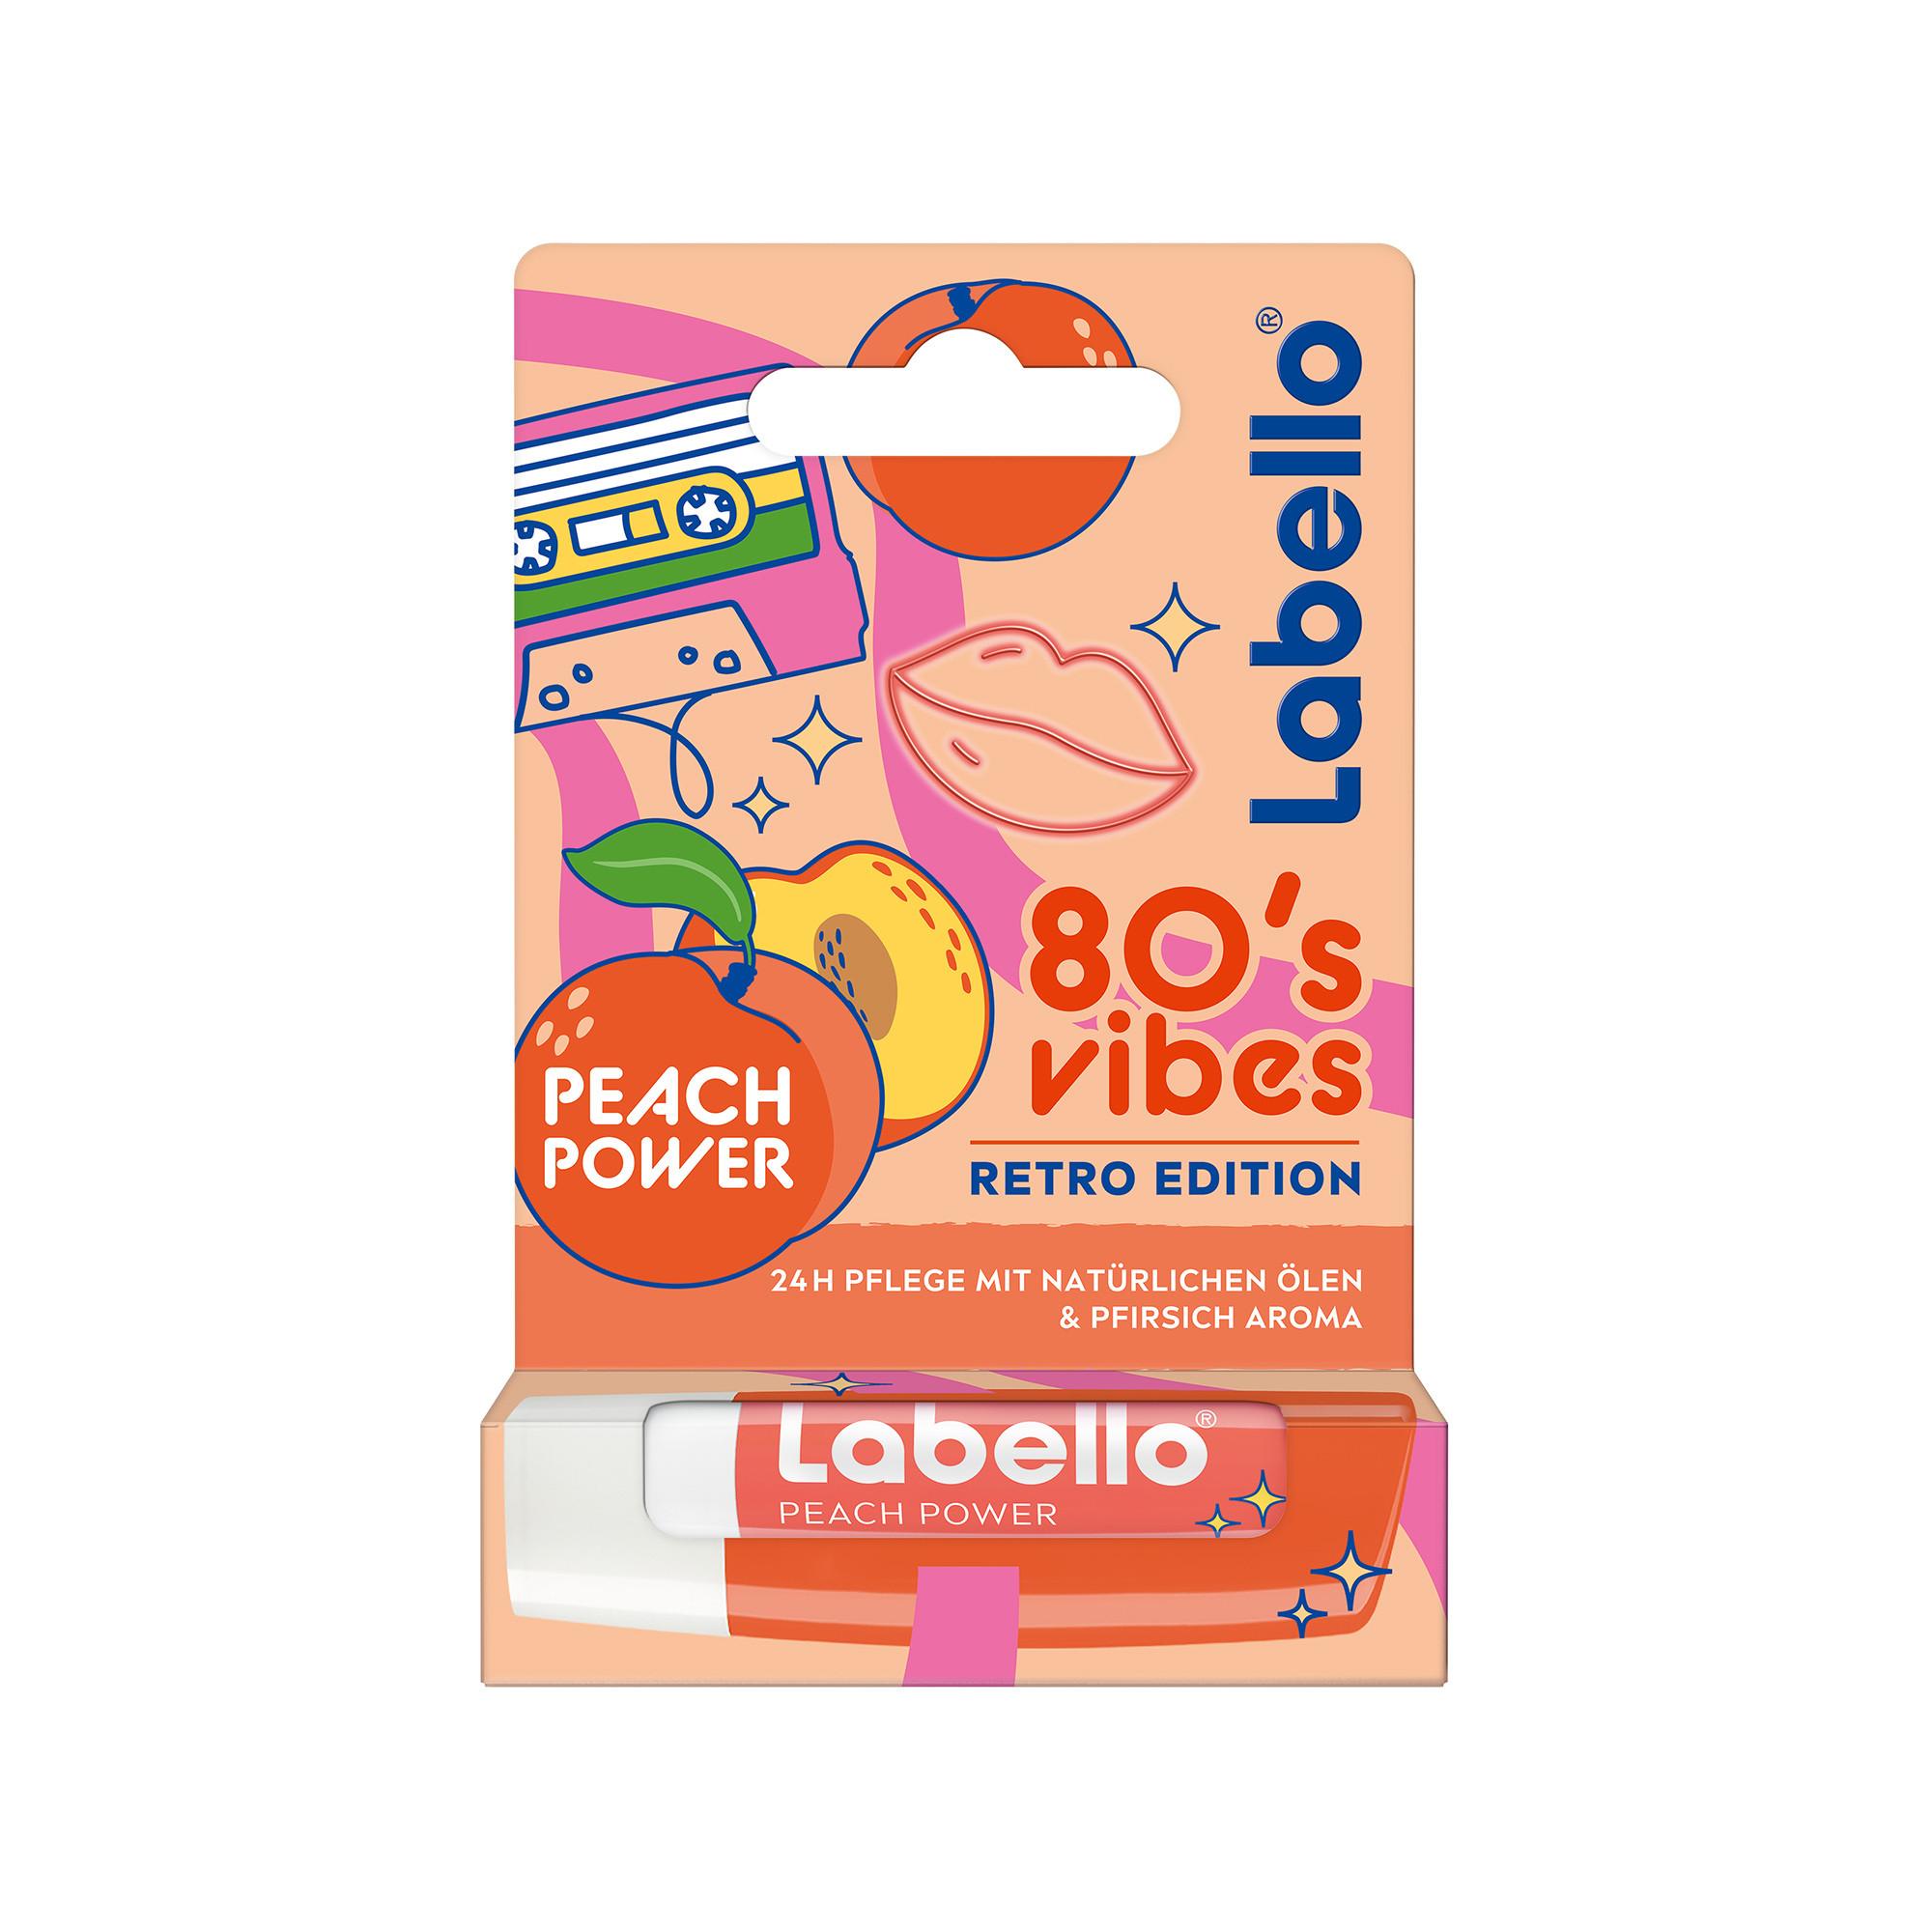 NIVEA  Labello Peach Power Retro Edition 